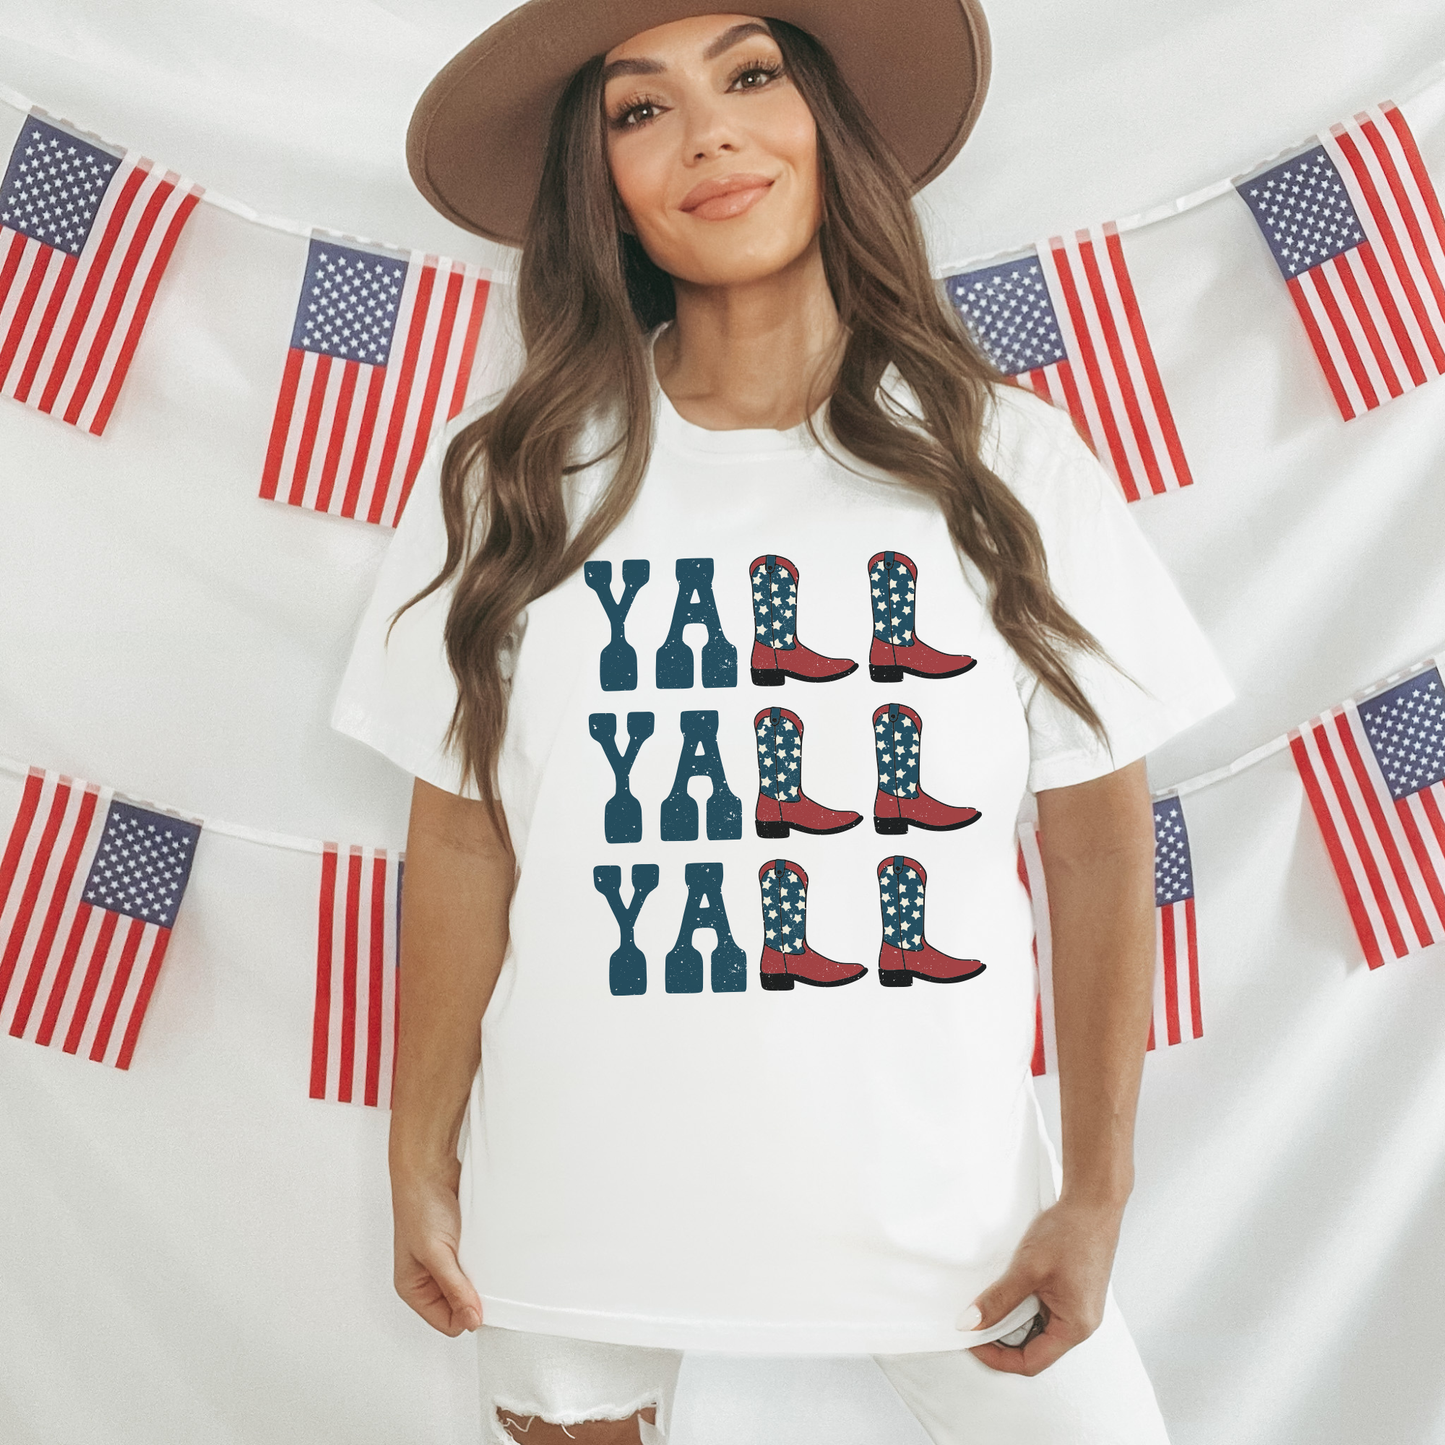 Fourth of July Yall Yall Yall T Shirt